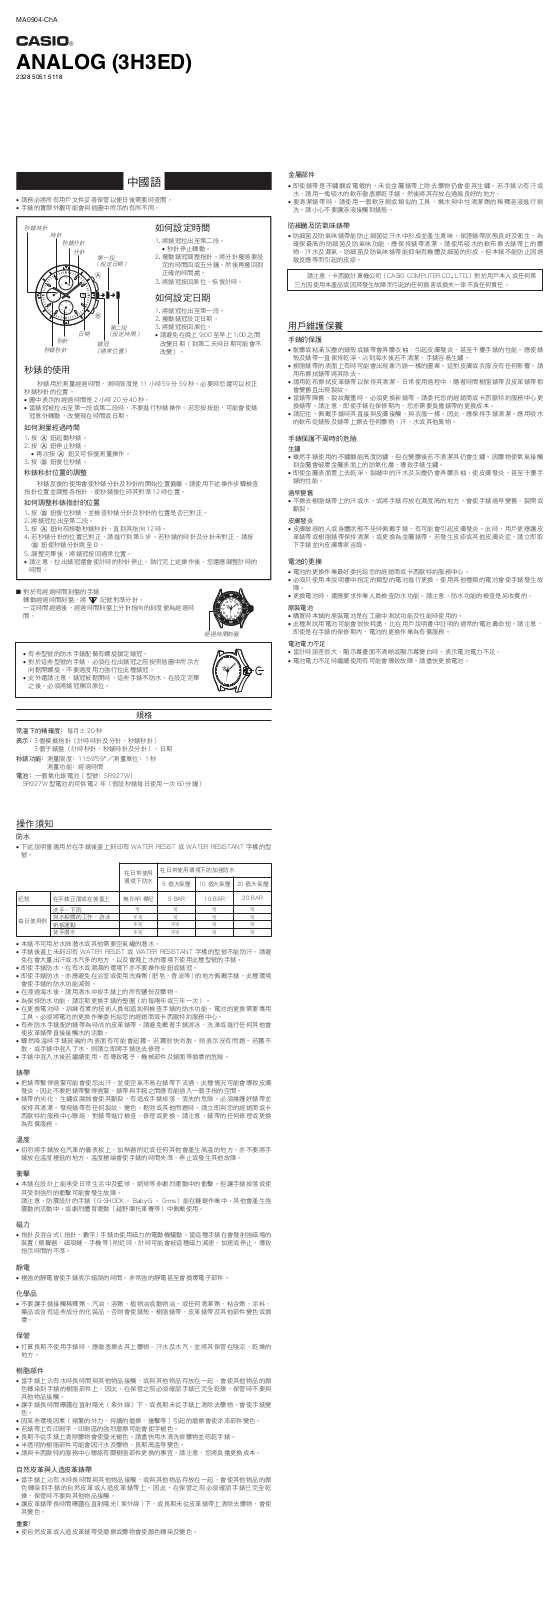 CASIO 5118 User Manual